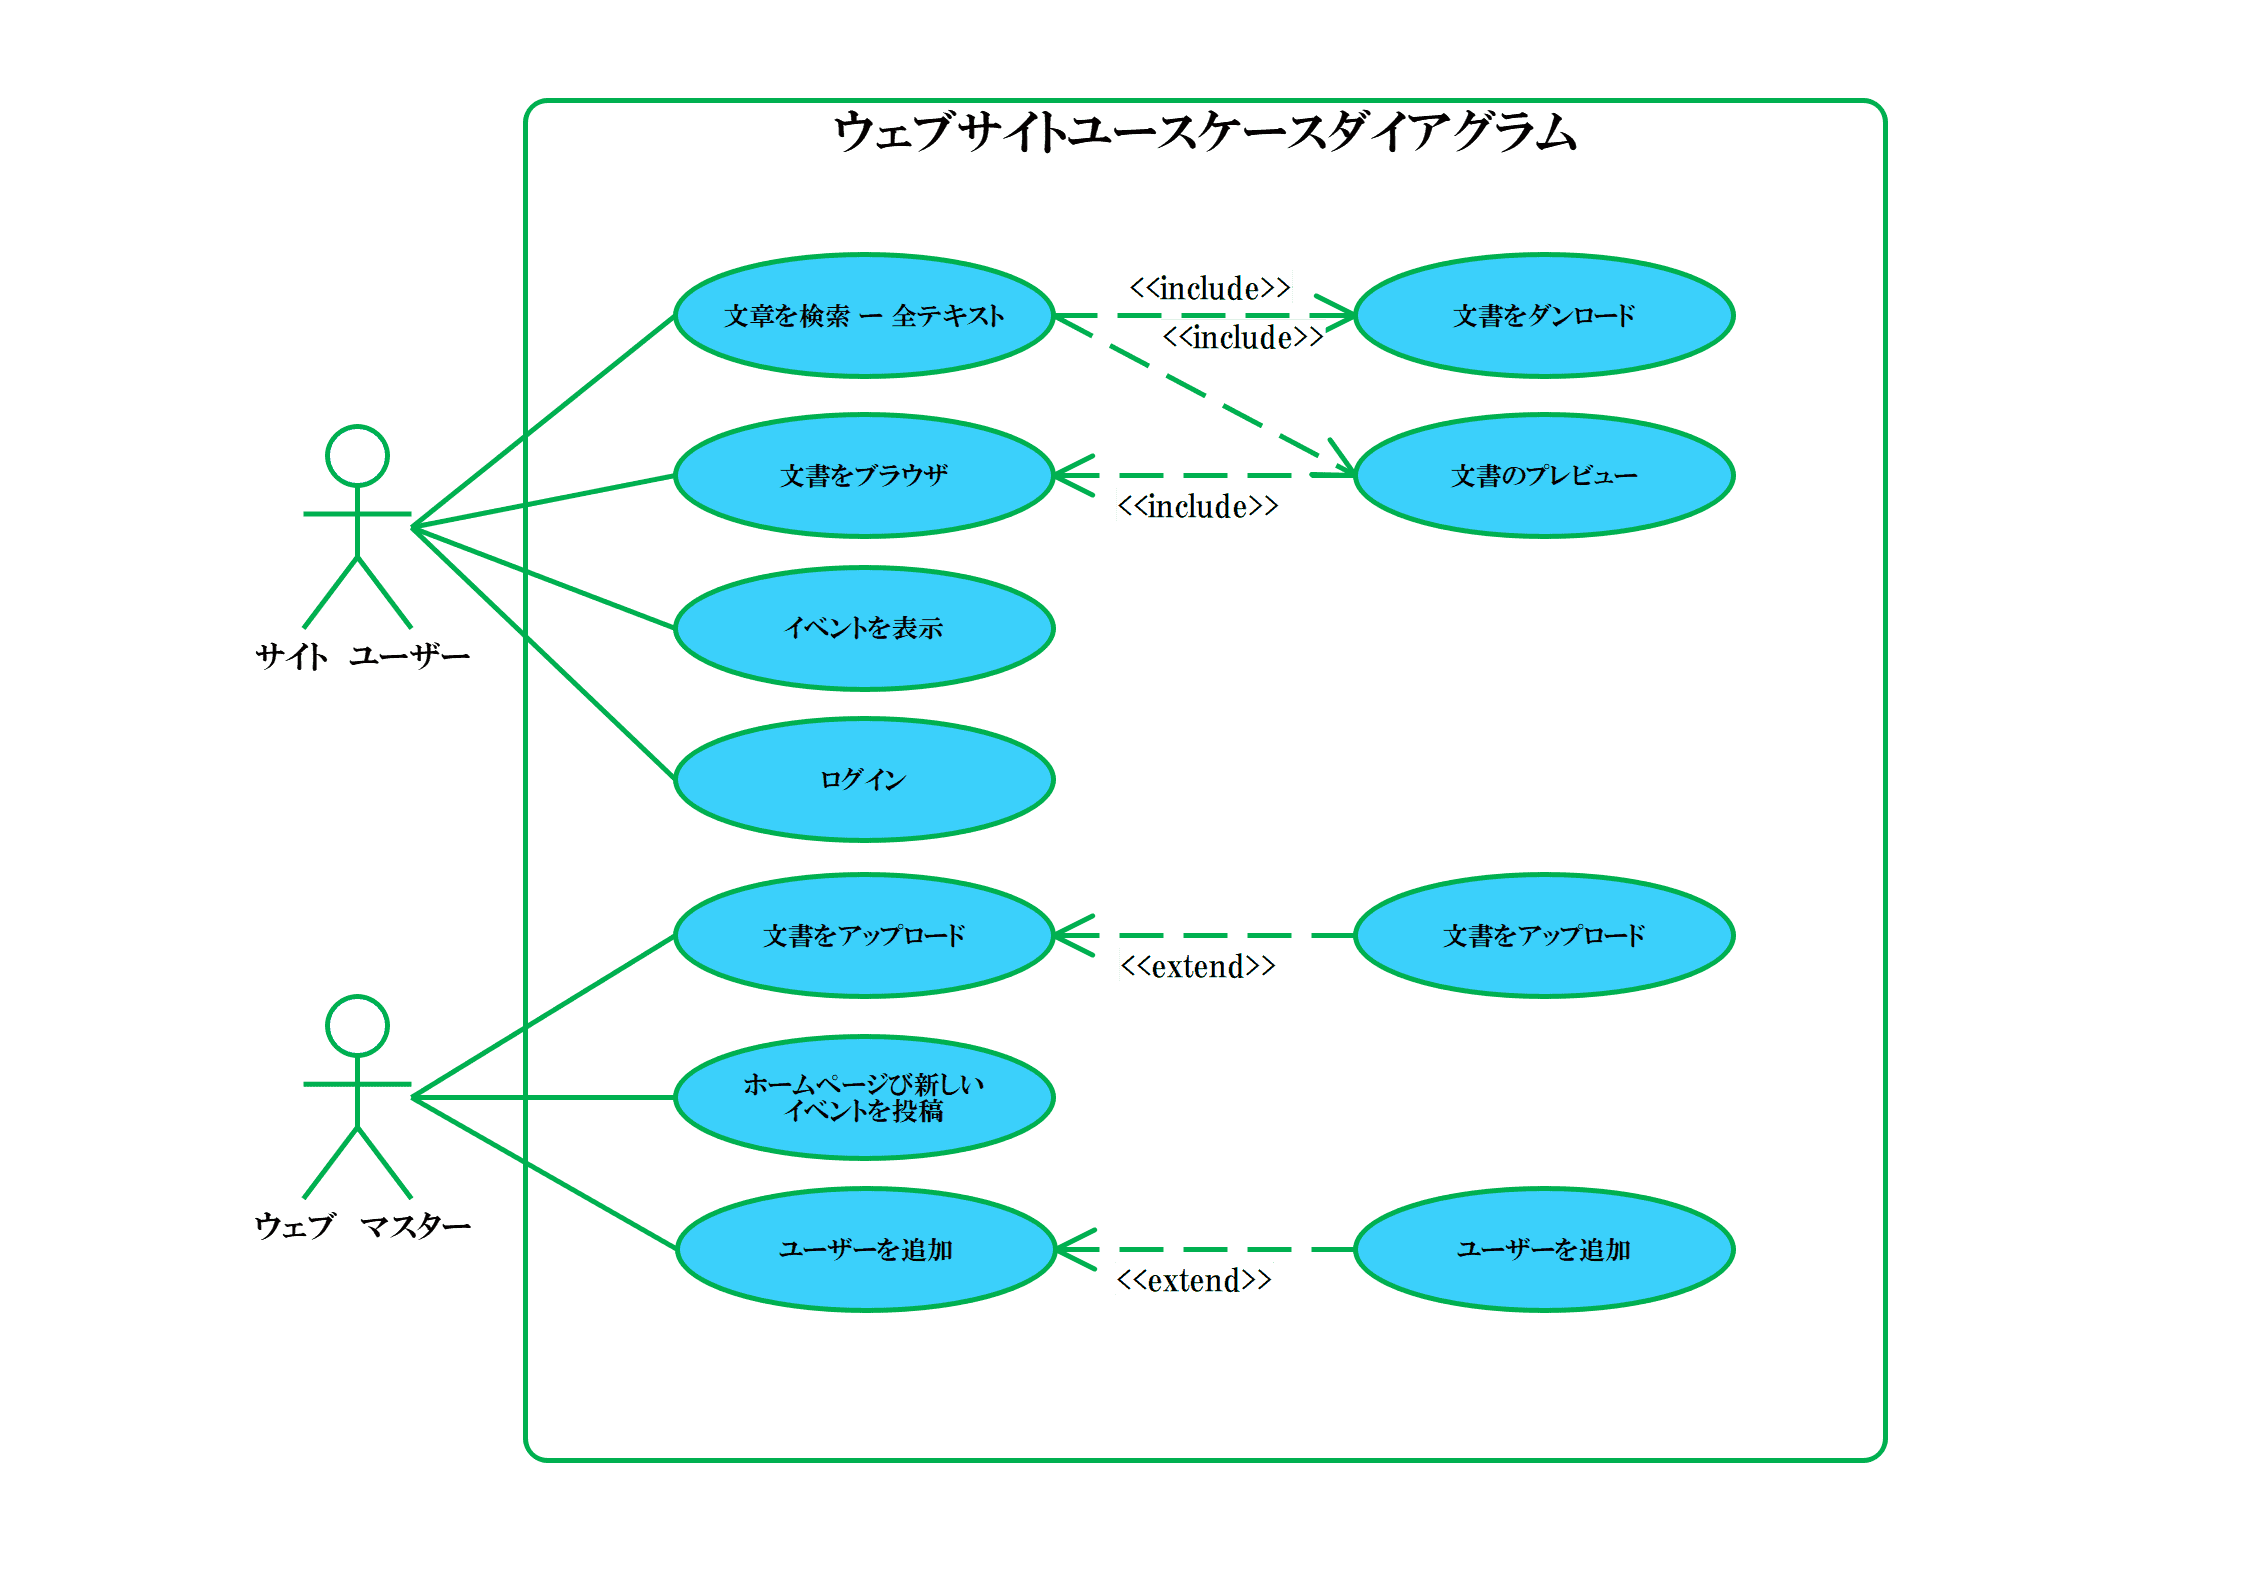 生徒管理システムのユースケース図